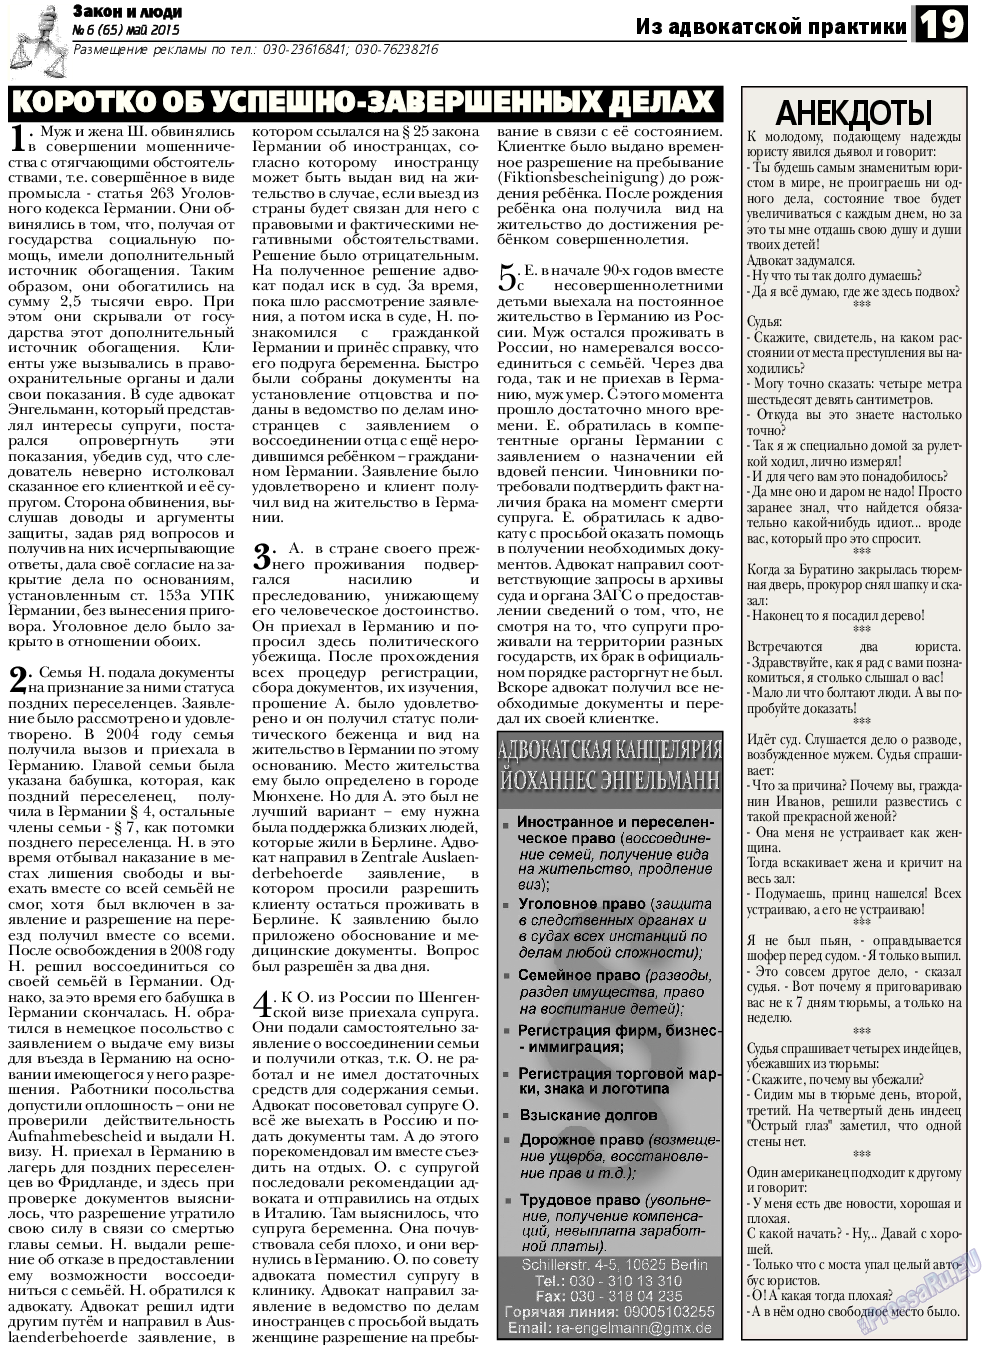 Закон и люди (газета). 2015 год, номер 6, стр. 19